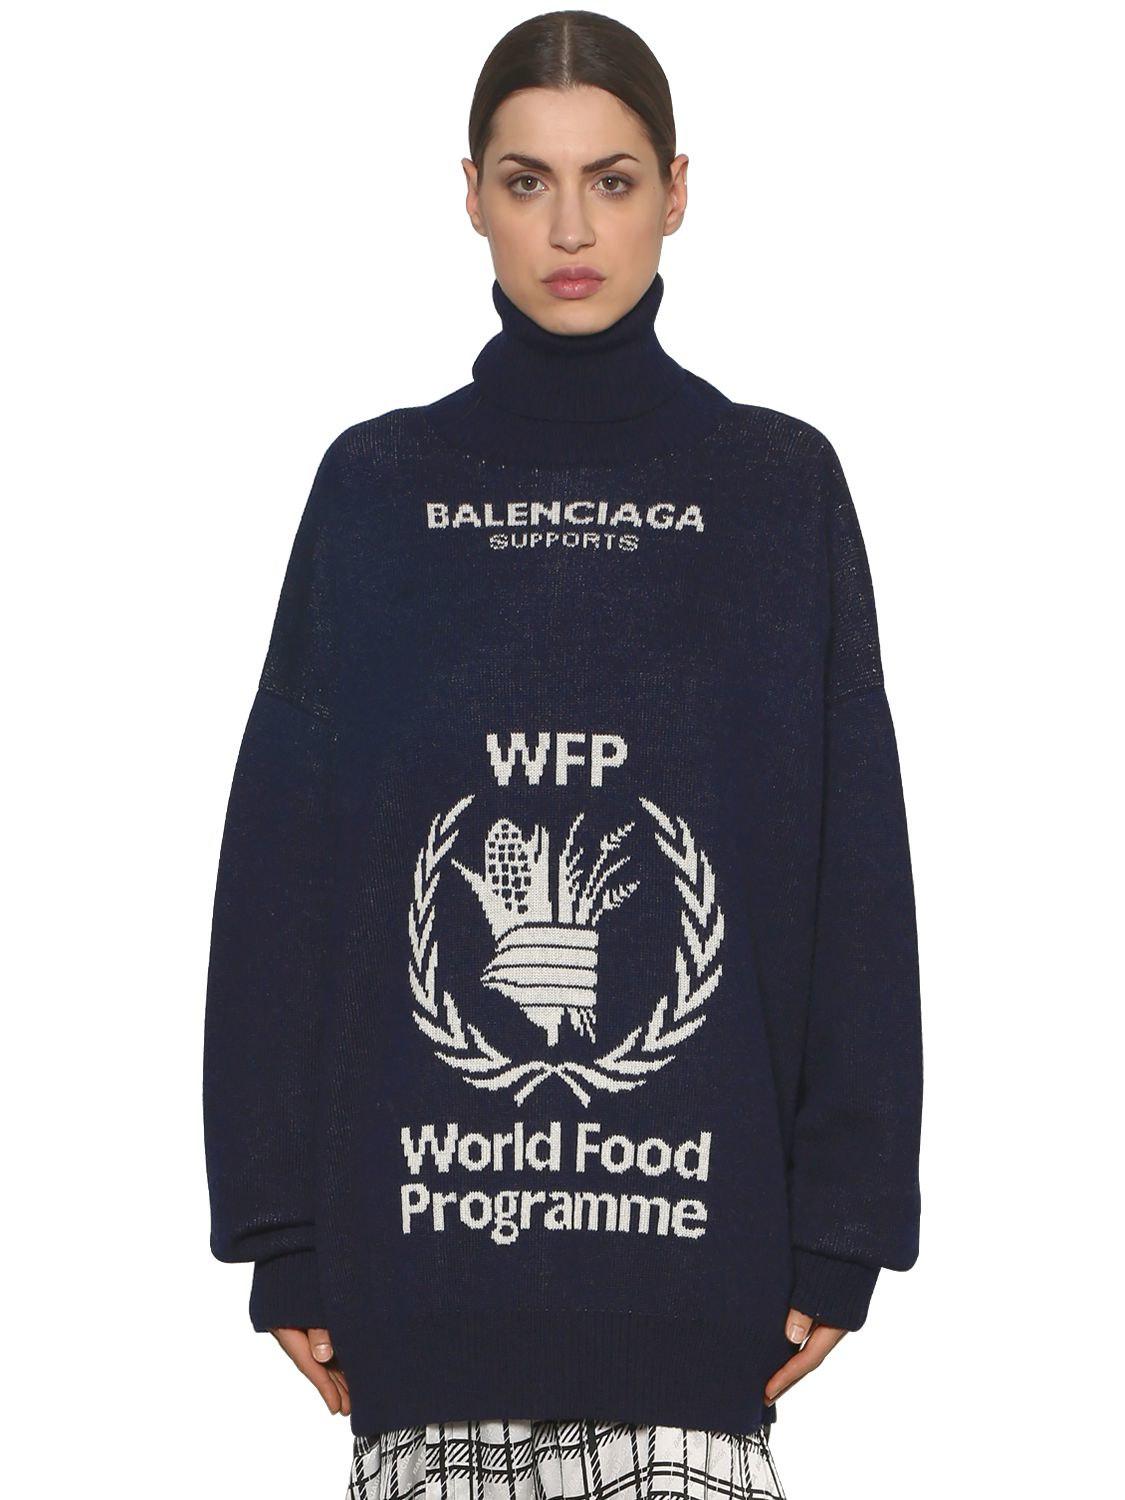 اكتب مكعب التجاعيد balenciaga supports world food programme - sjvbca.org